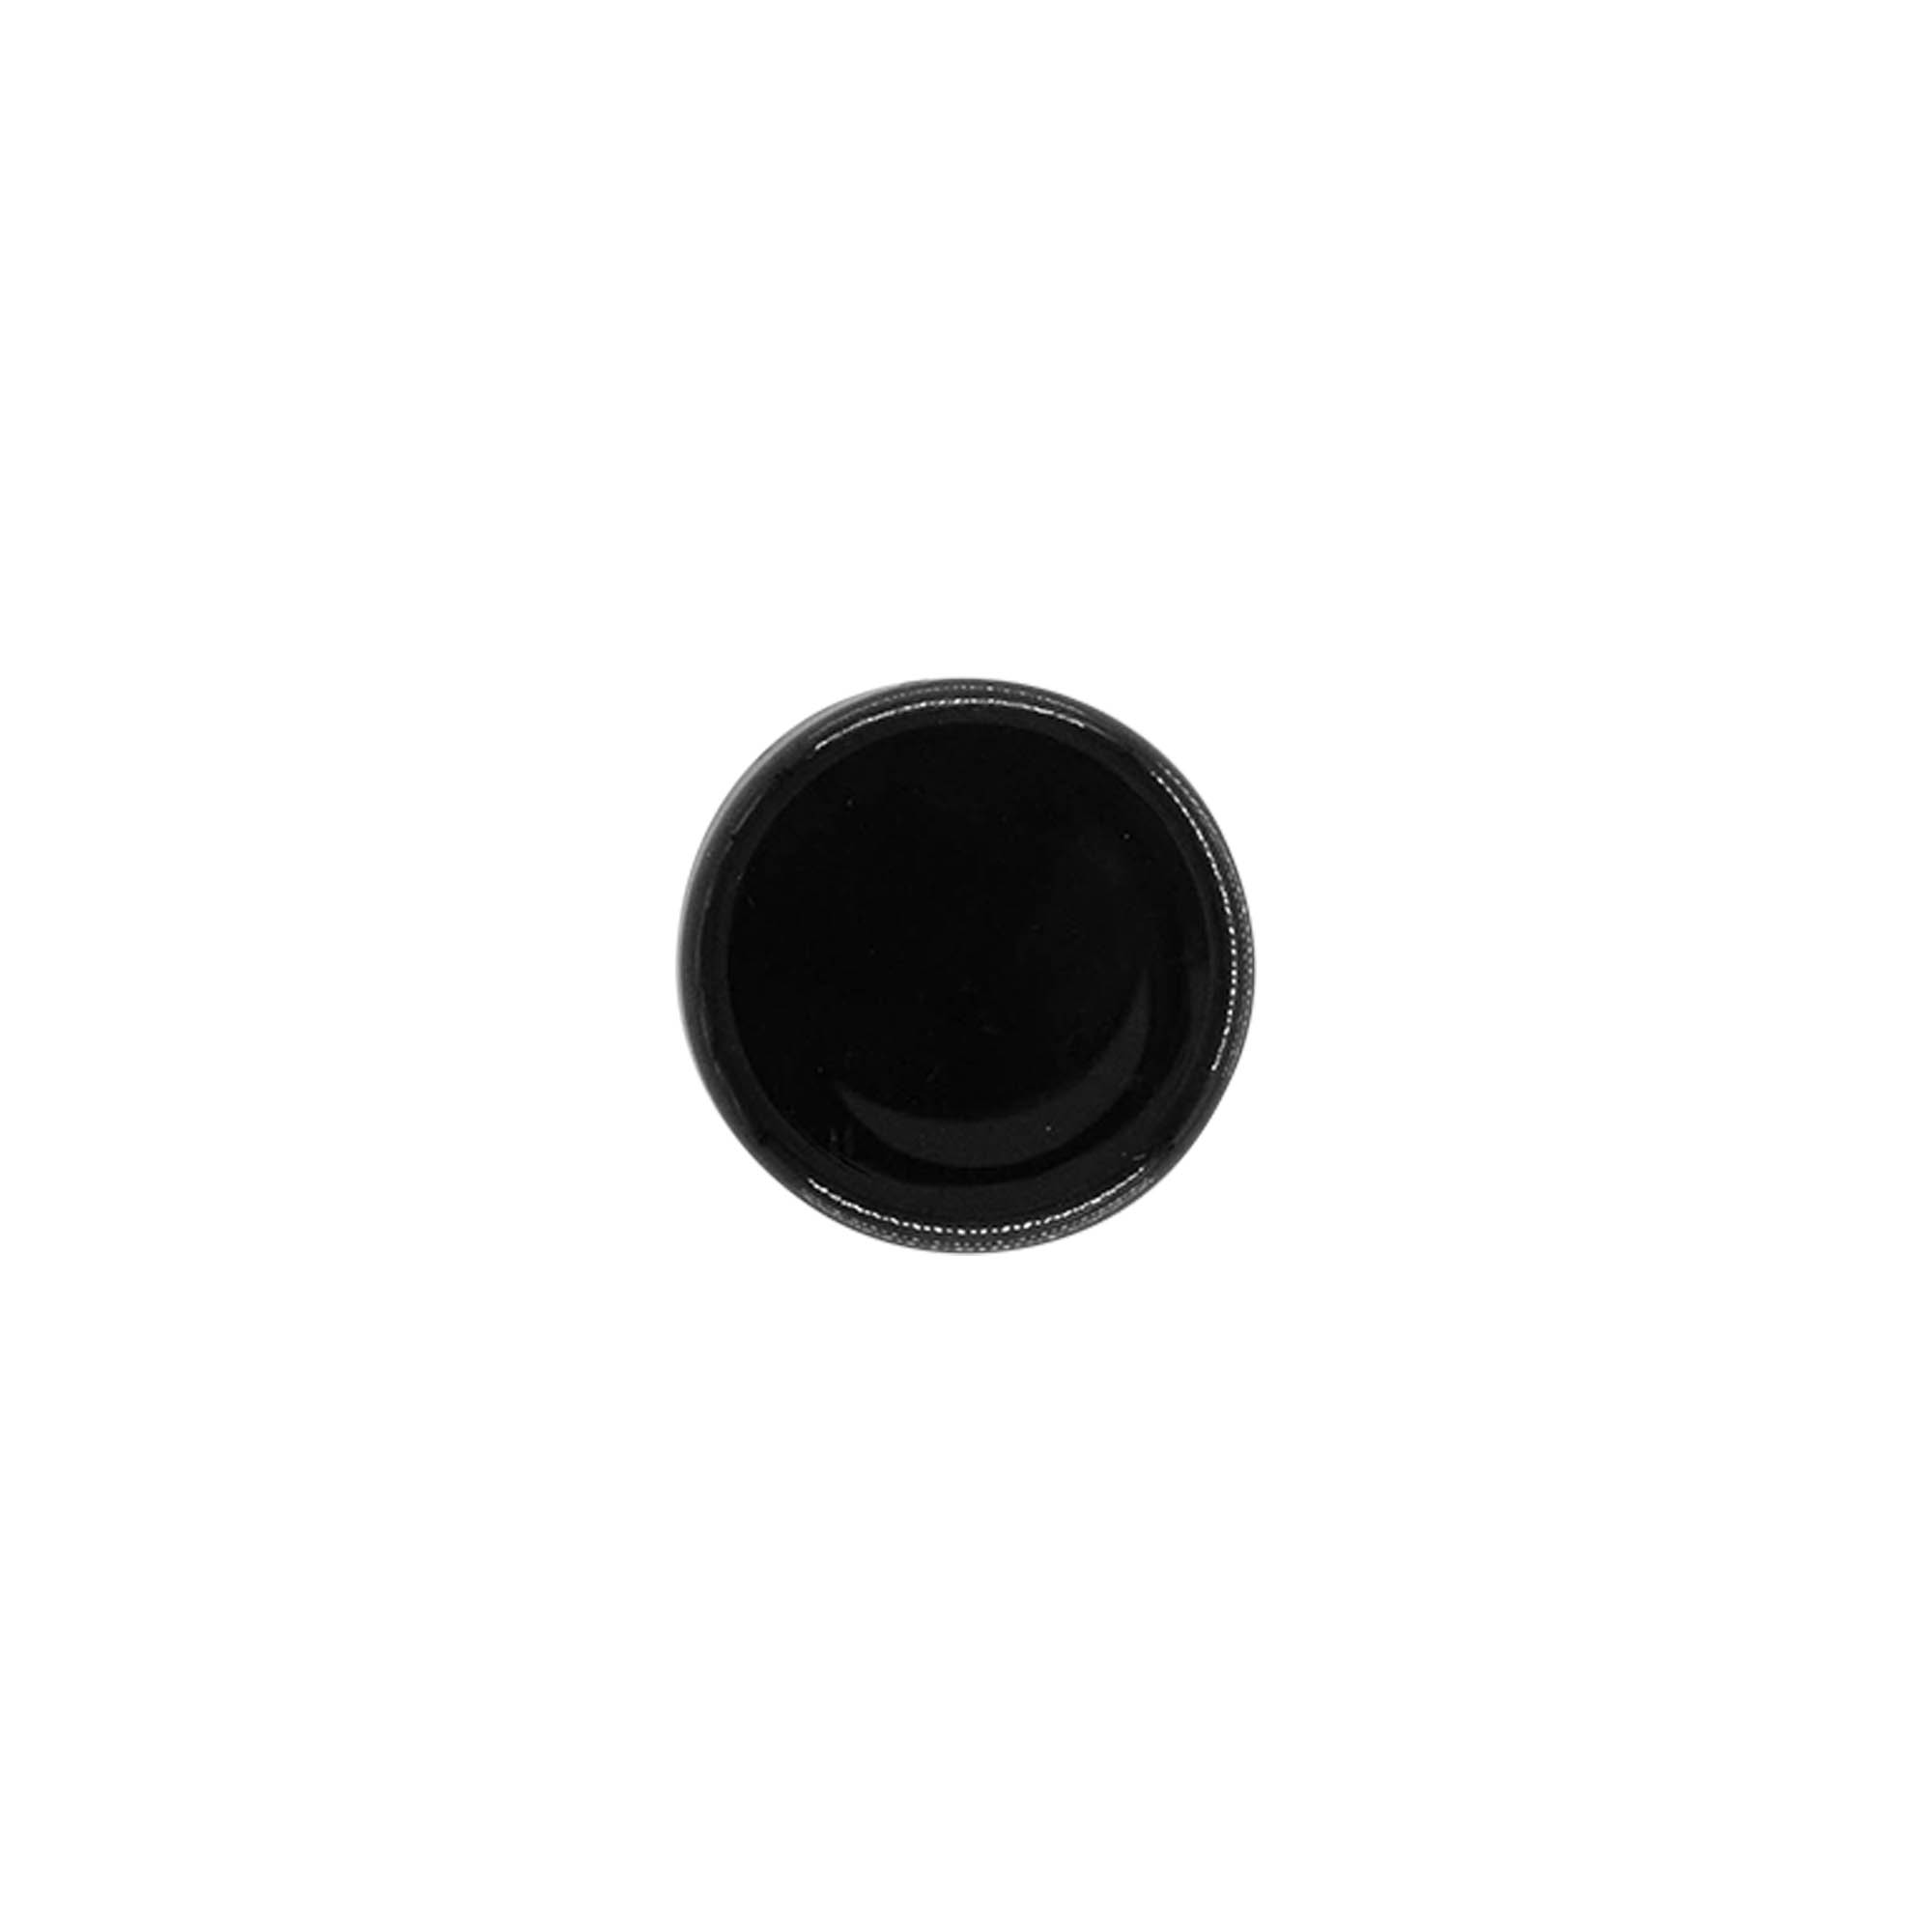 Schraubverschluss, PP-Kunststoff, schwarz, für Mündung: GPI 20/410